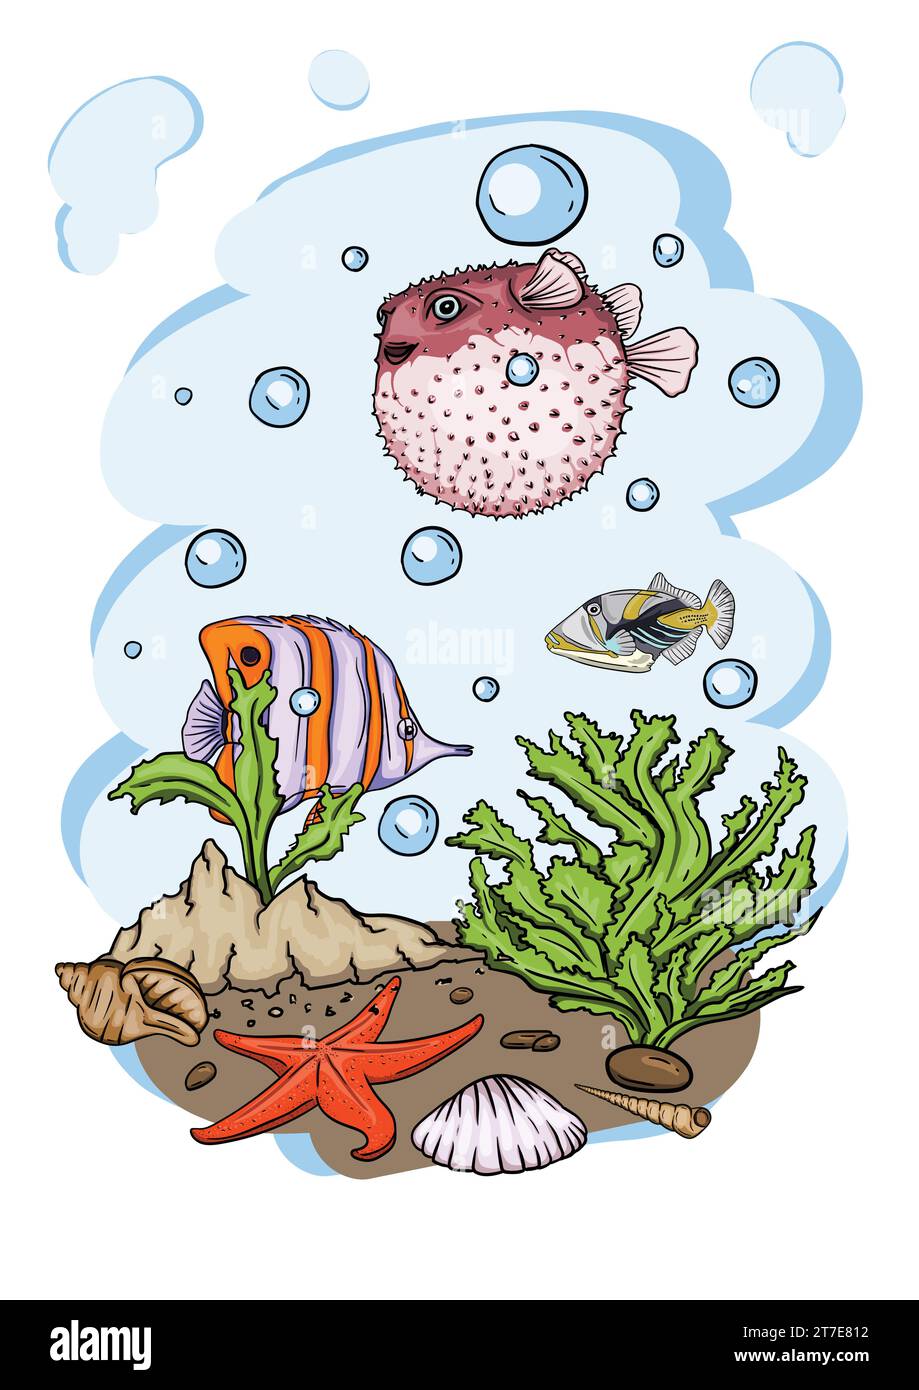 Illustration vectorielle lumineuse du monde sous-marin avec de beaux poissons, coquillages, algues dans la mer Illustration de Vecteur